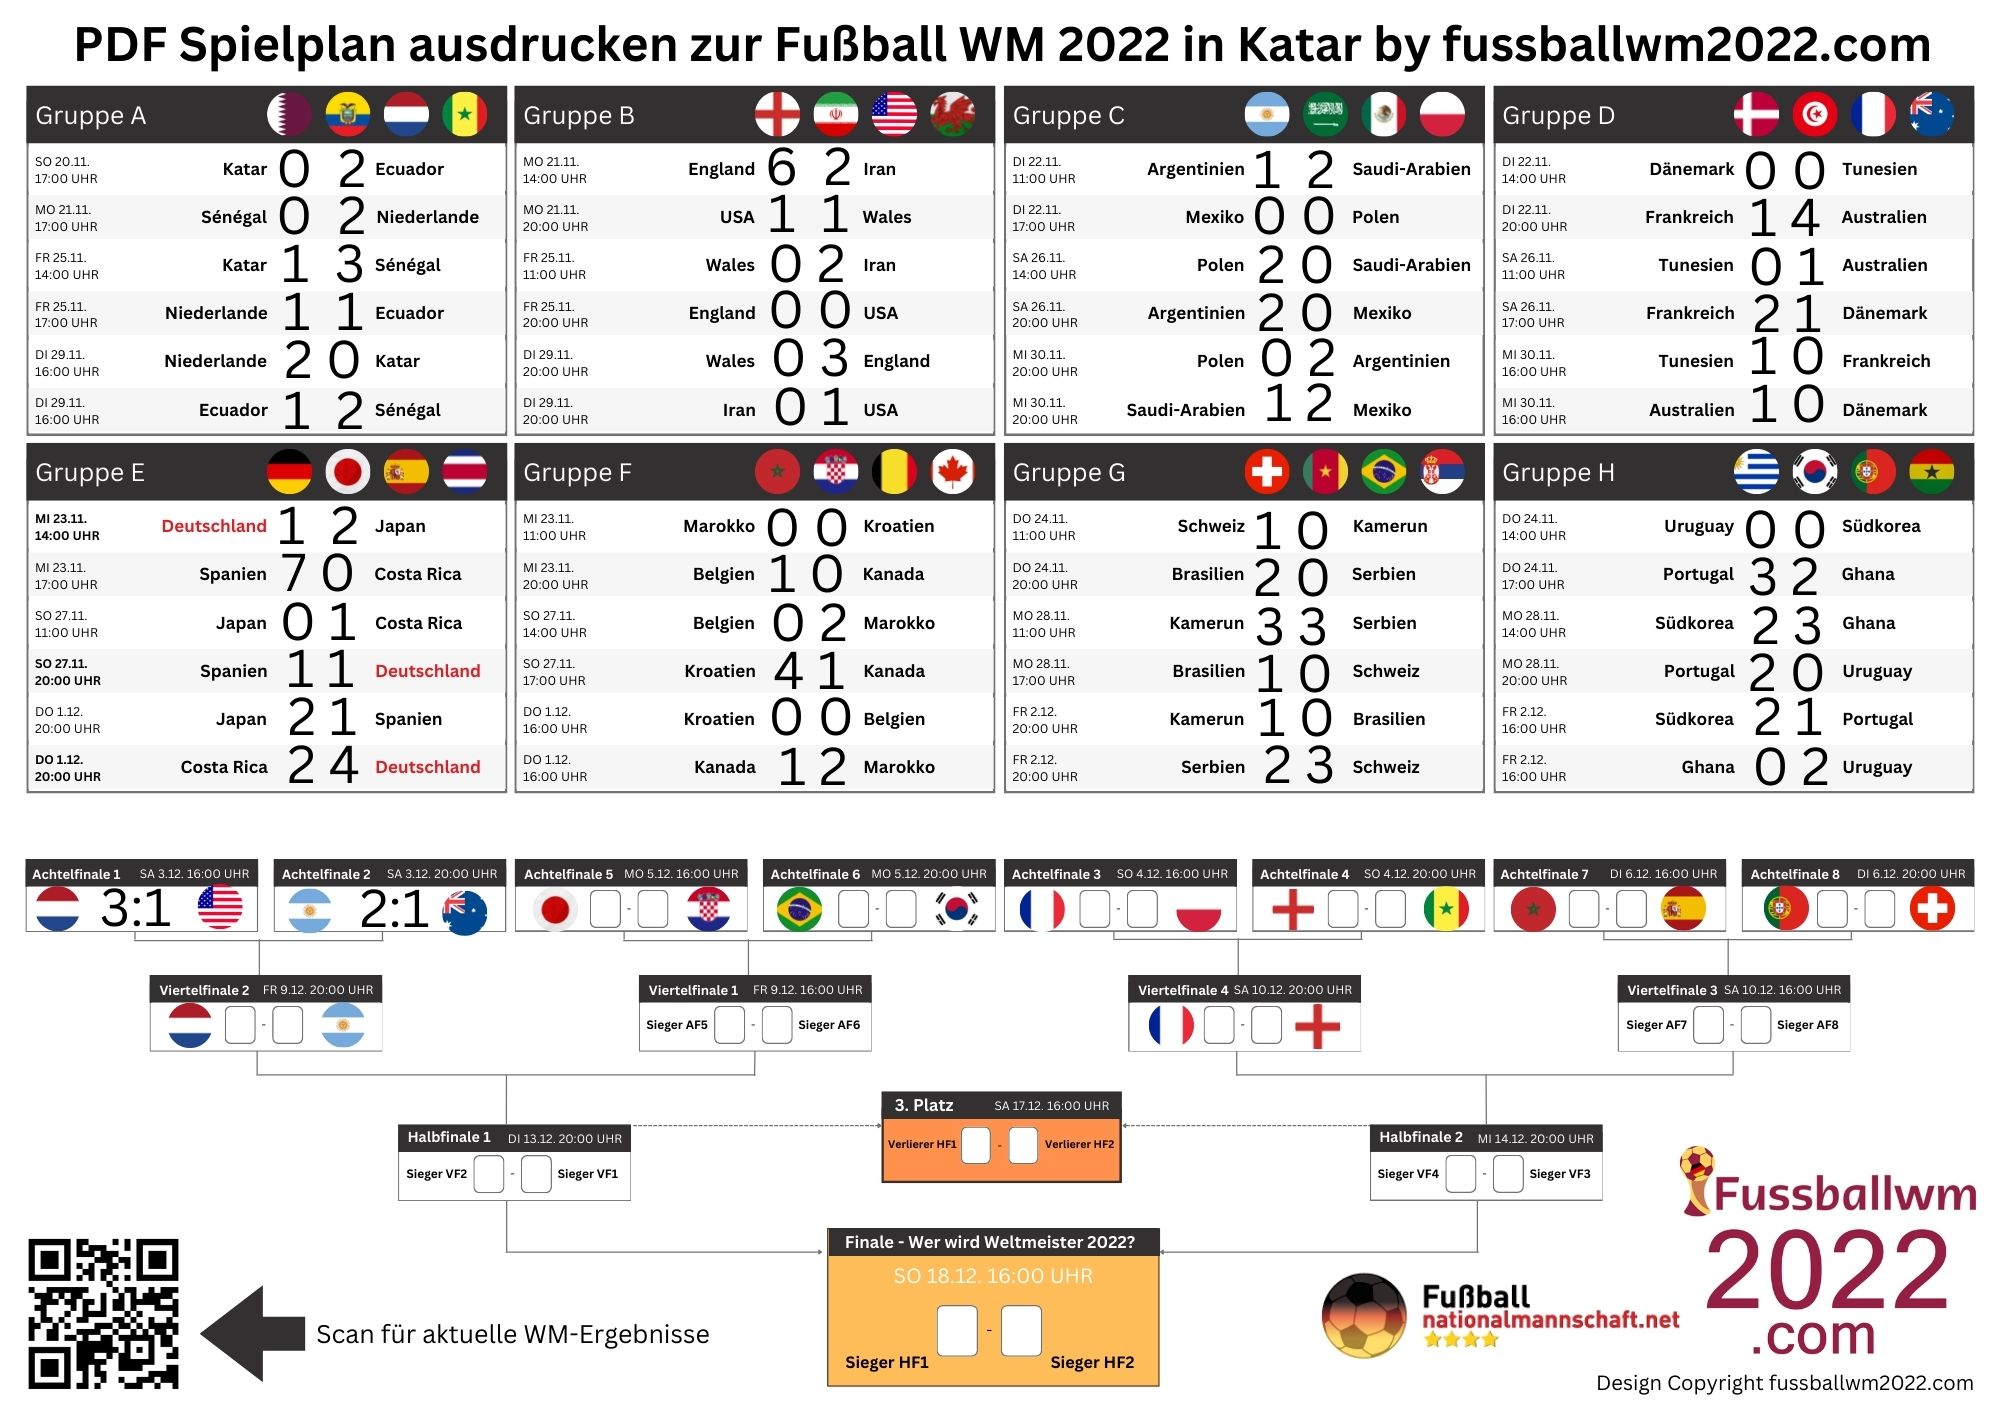 WM Spiele 2022 nach Spieltag, Wochentag und Datum - Wer spielt heute bei der WM 2022?